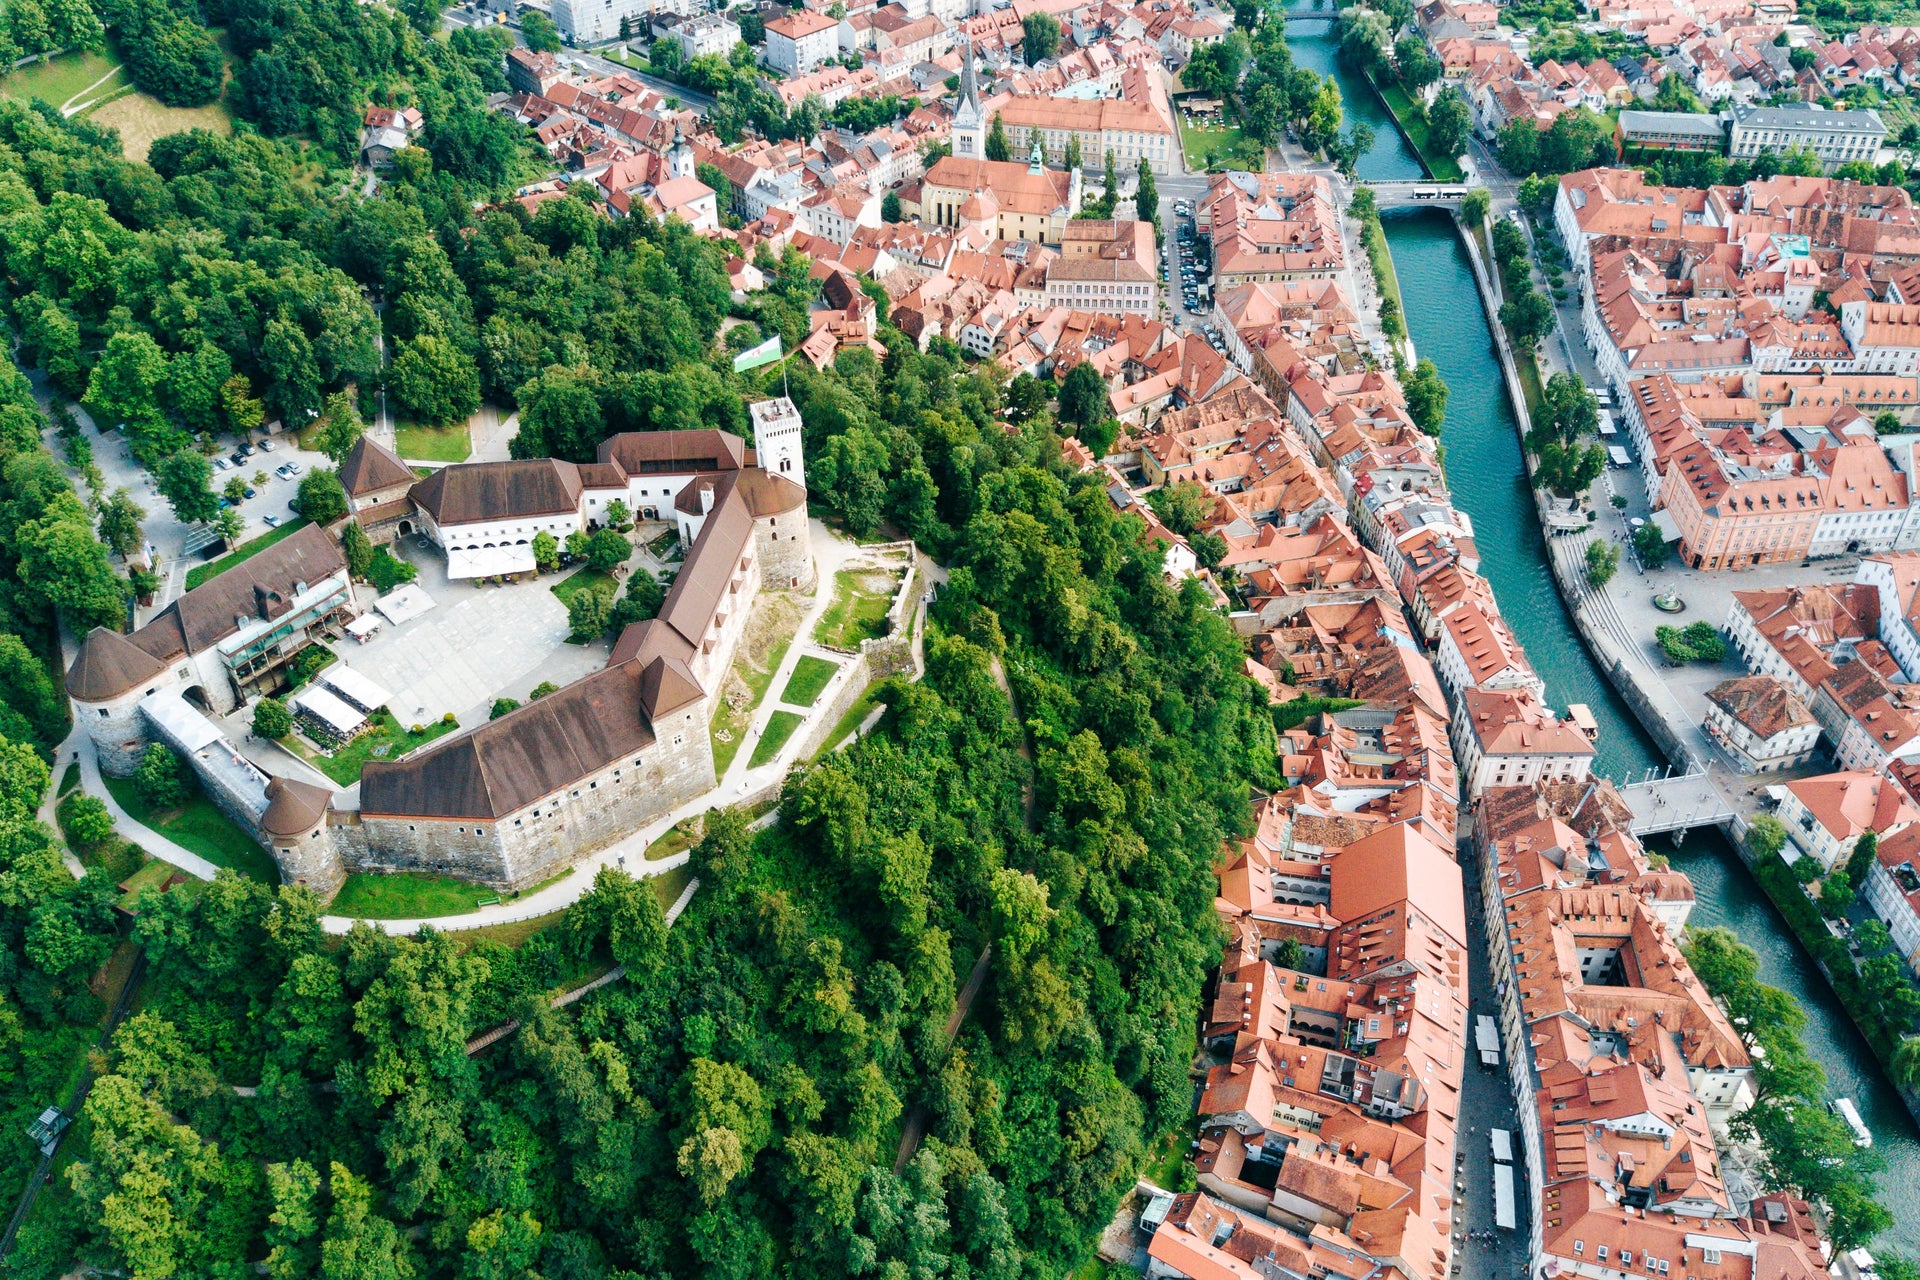 Ljubljana Guided Tour